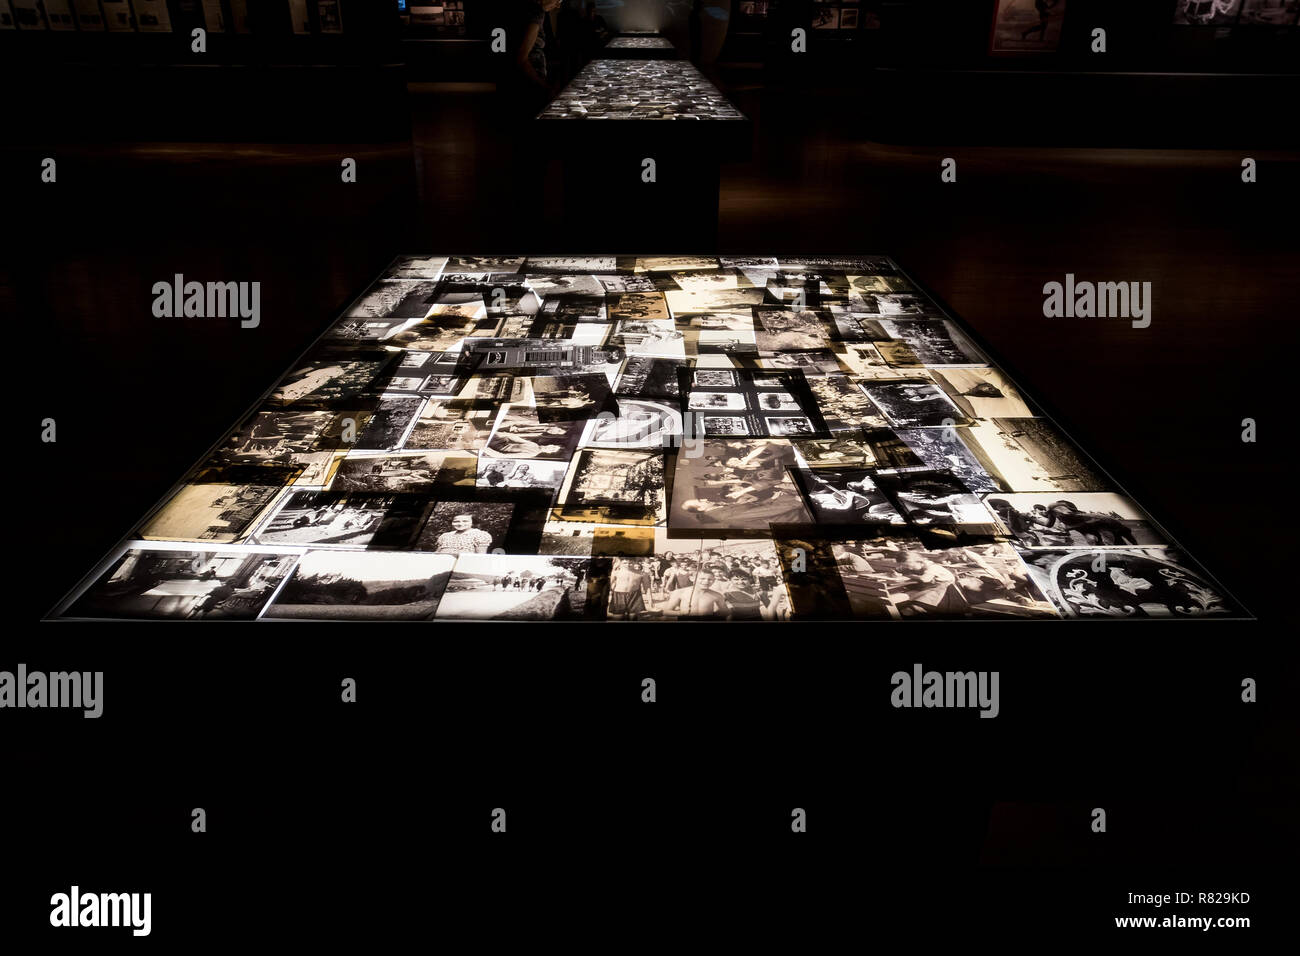 Mostra fotografica di fotografie della seconda guerra mondiale dedicata alle vittime dell'Olocausto durante il periodo nazista in Germania. Yad Vashem. Gerusalemme, Israele. Il 24 ottobre 2018. Foto Stock